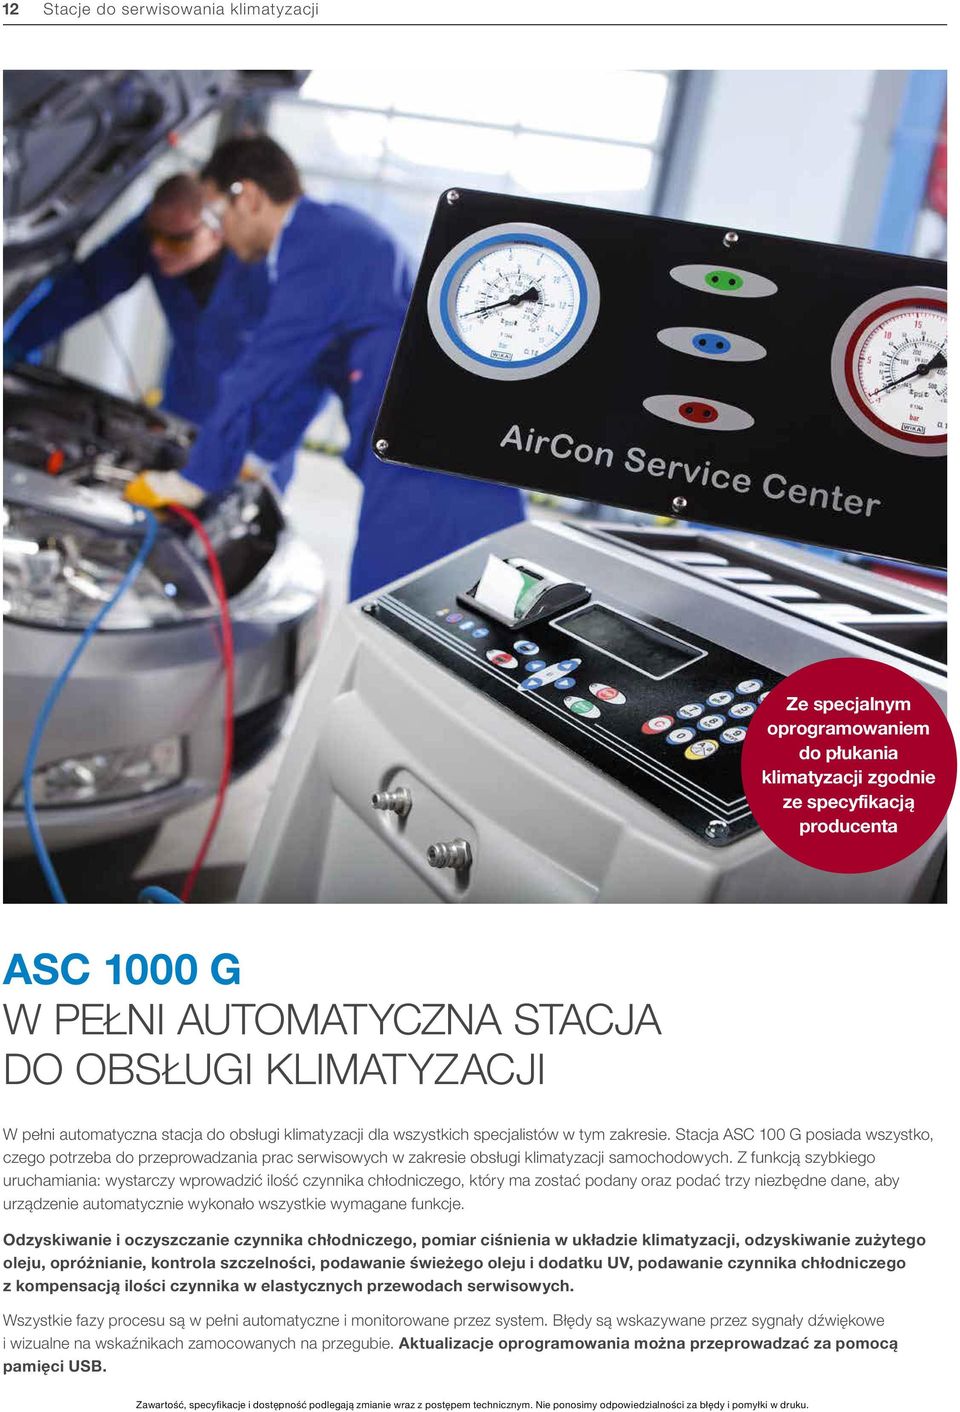 Stacja ASC 100 G posiada wszystko, czego potrzeba do przeprowadzania prac serwisowych w zakresie obsługi klimatyzacji samochodowych.